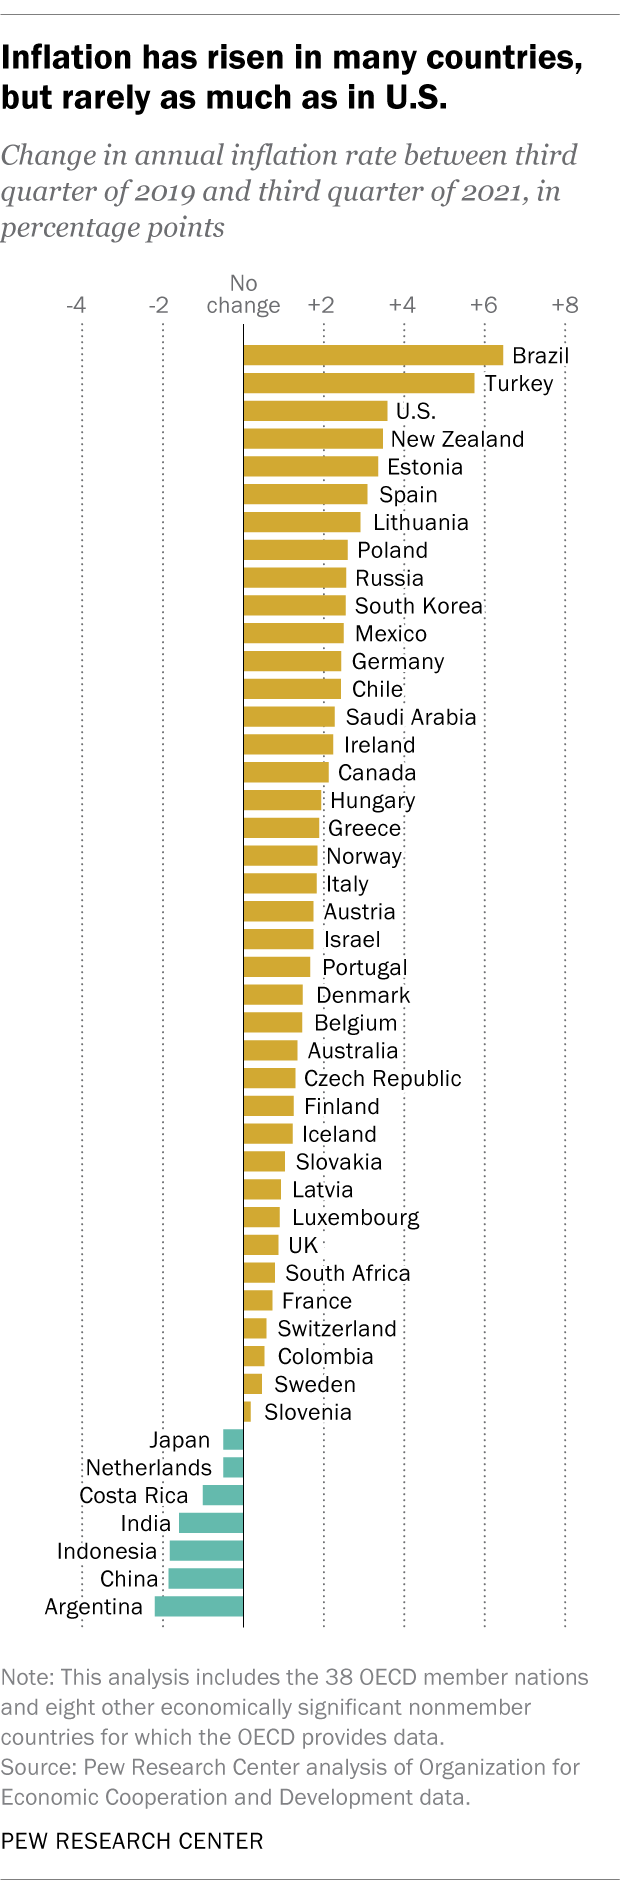 taulukko osoittaa, että inflaatio on noussut monissa maissa, mutta vain vähän enemmän kuin Yhdysvalloissa.